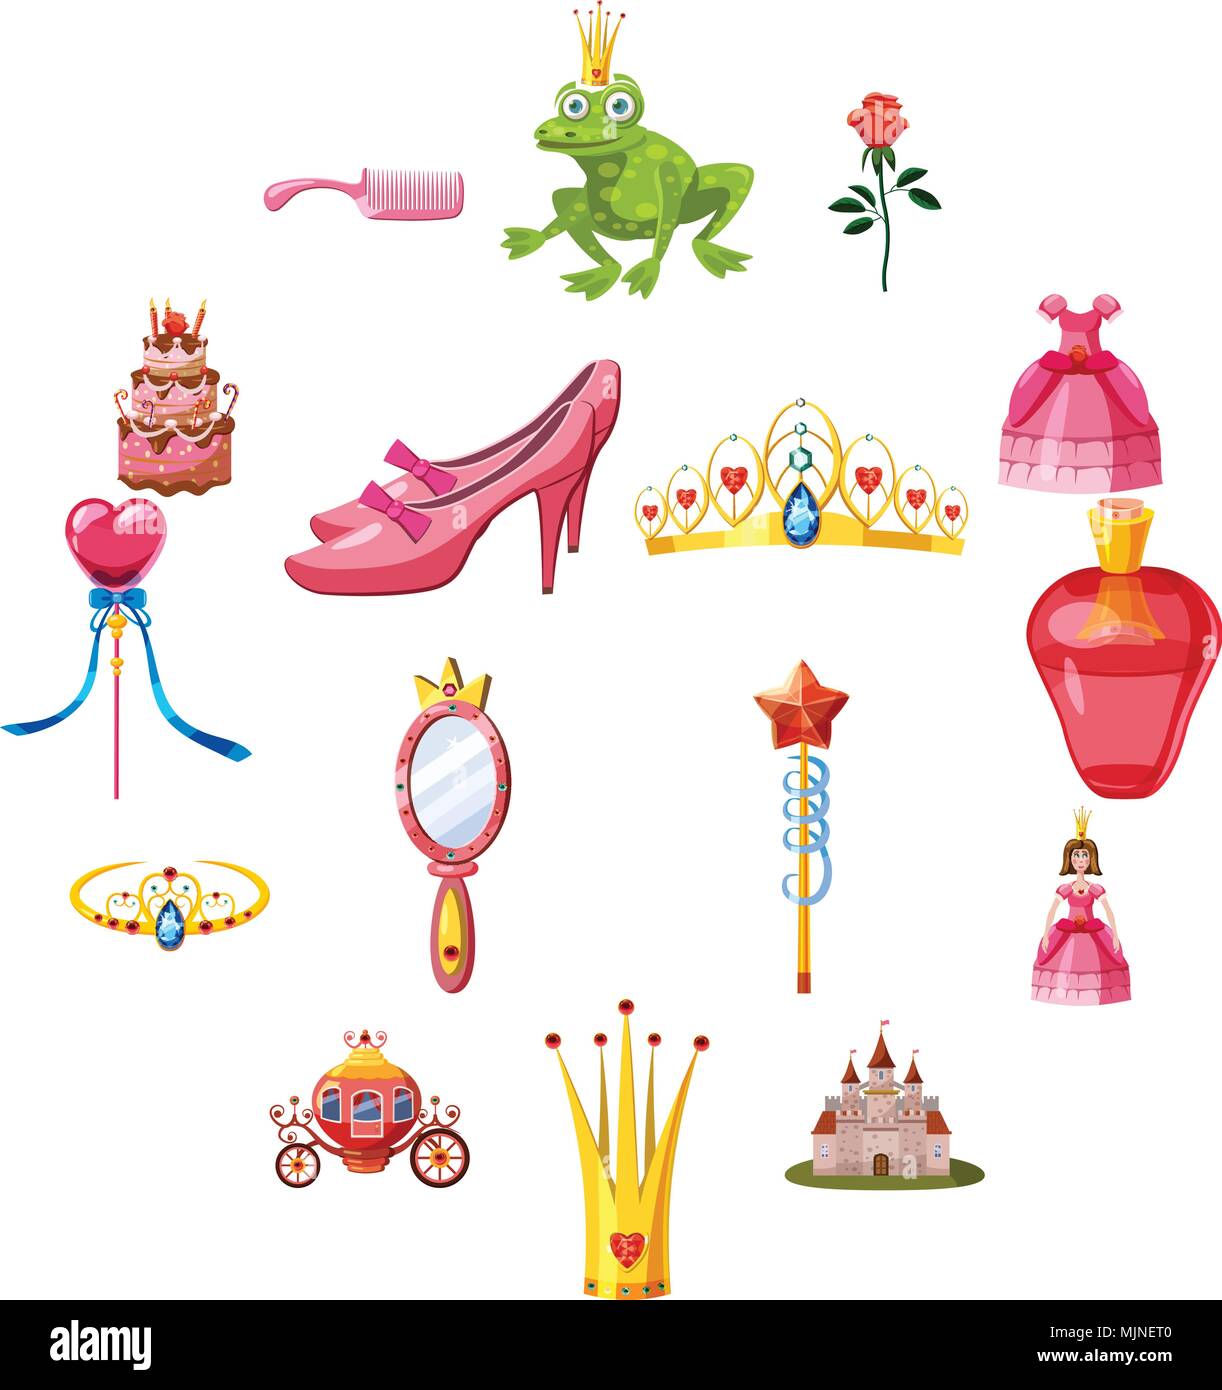 Märchen Prinzessin Puppe Icons Set, Cartoon-Stil Stock Vektor